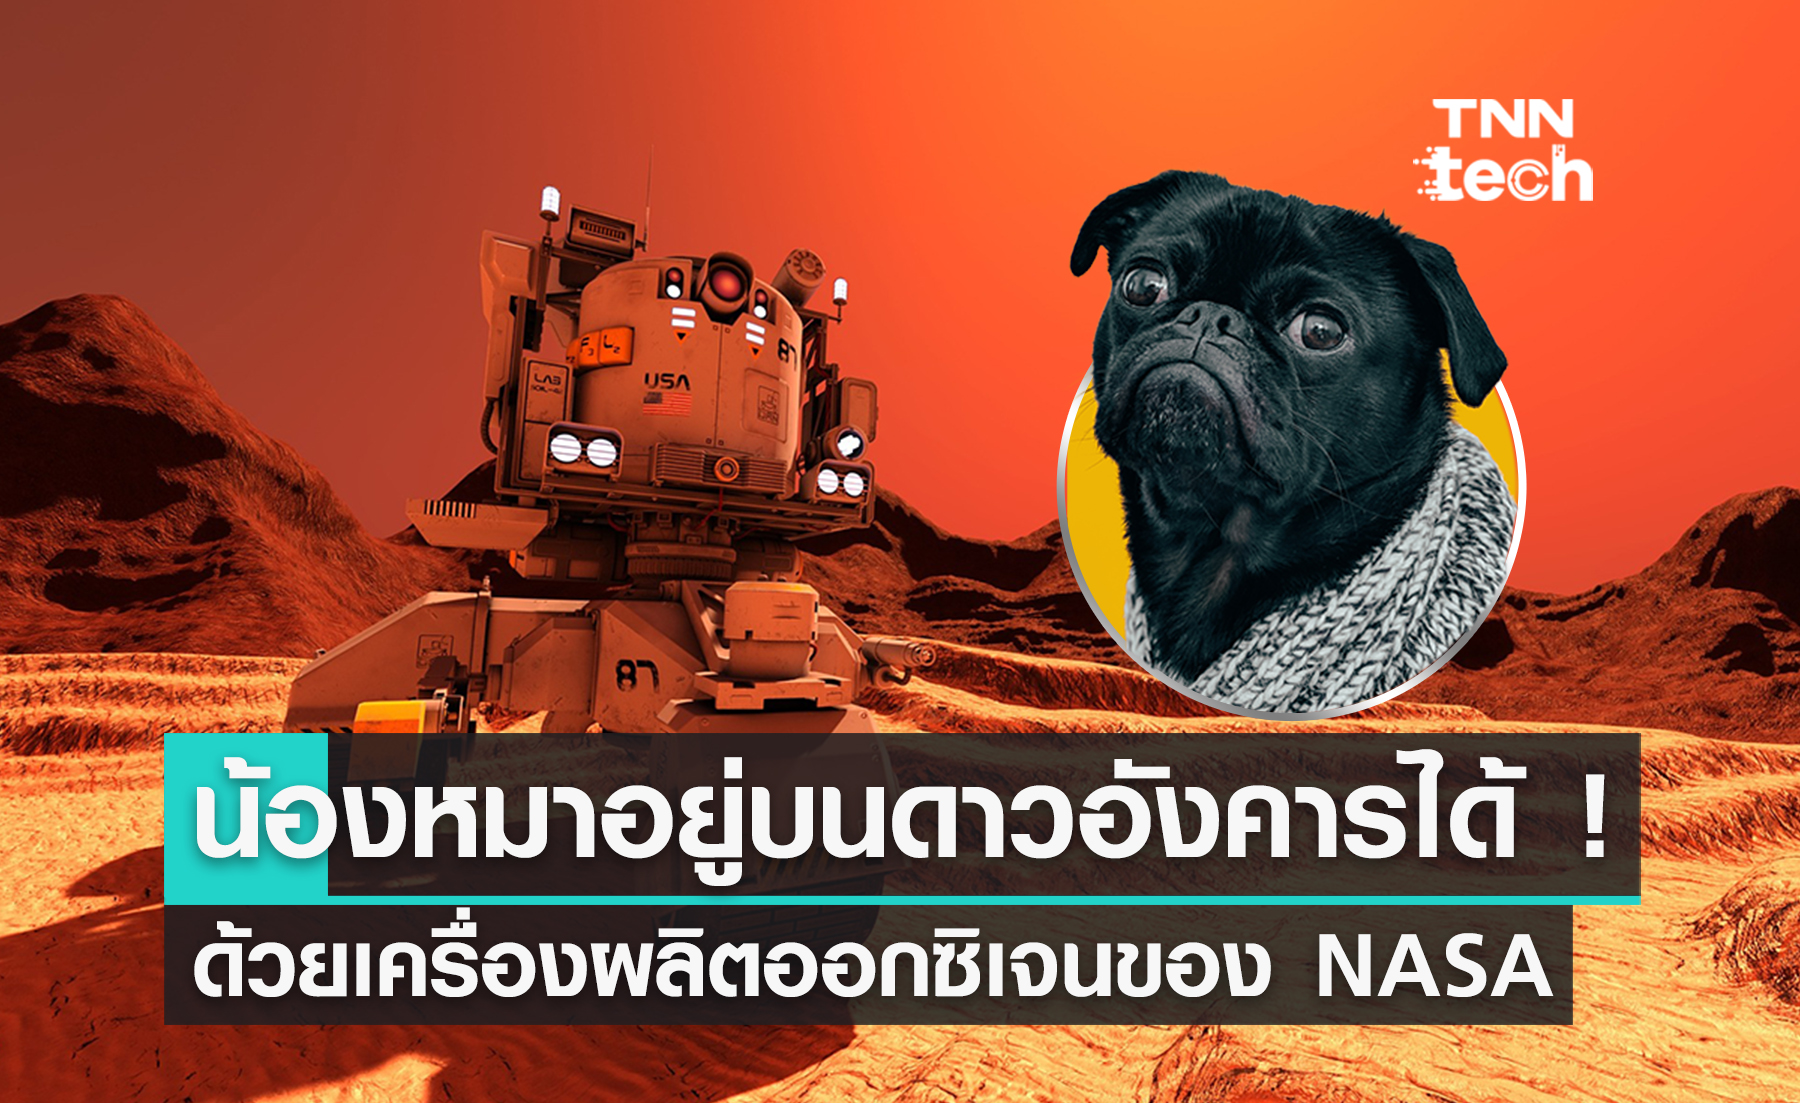 NASA ผลิตออกซิเจนพอให้น้องหมาอยู่บนดาวอังคารได้แล้ว !?